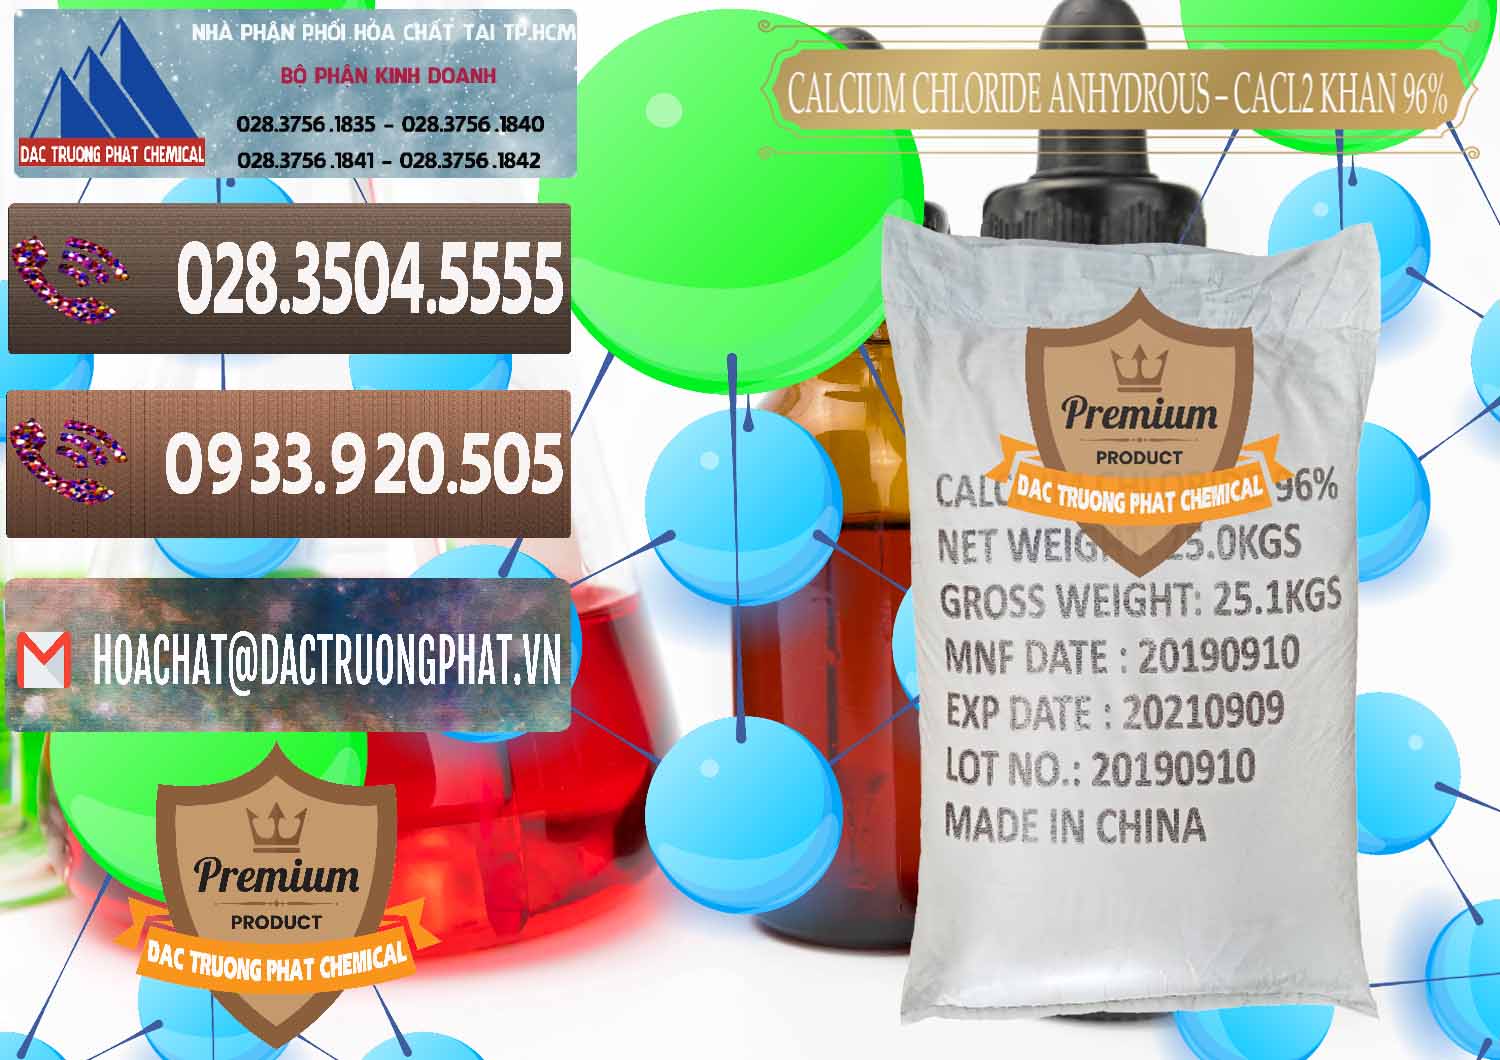 Công ty bán và cung ứng CaCl2 – Canxi Clorua Anhydrous Khan 96% Trung Quốc China - 0043 - Cty kinh doanh ( cung cấp ) hóa chất tại TP.HCM - hoachatviet.net